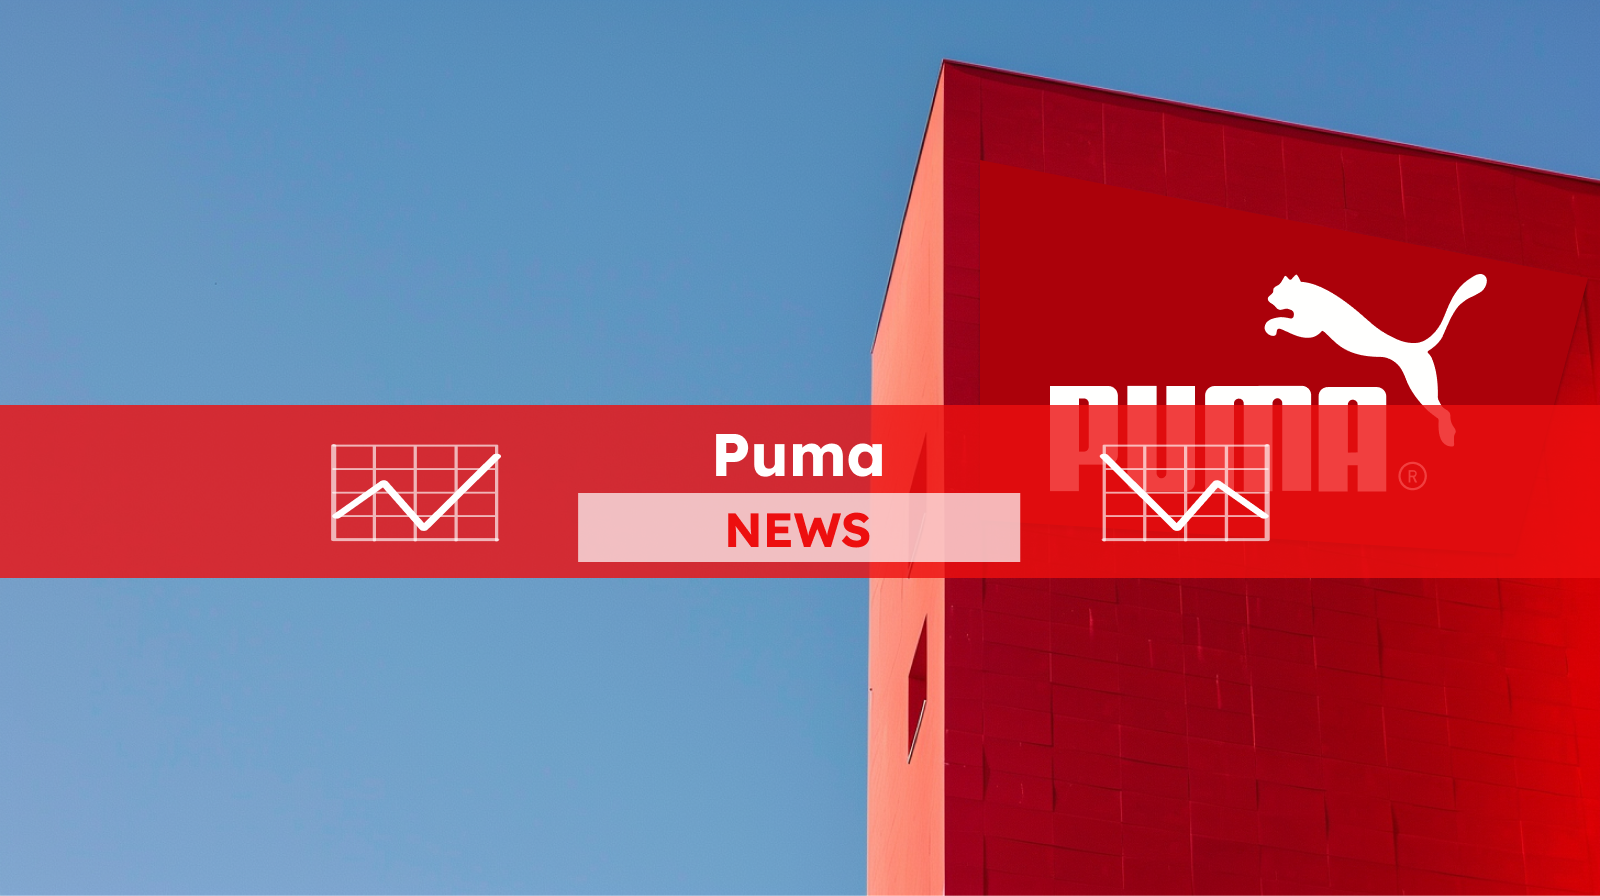 ein großer roter Monolith mit dem Puma-Logo und dem Markennamen in Weiß vor einem klaren blauen Himmel, mit einem roten NEWS Banner